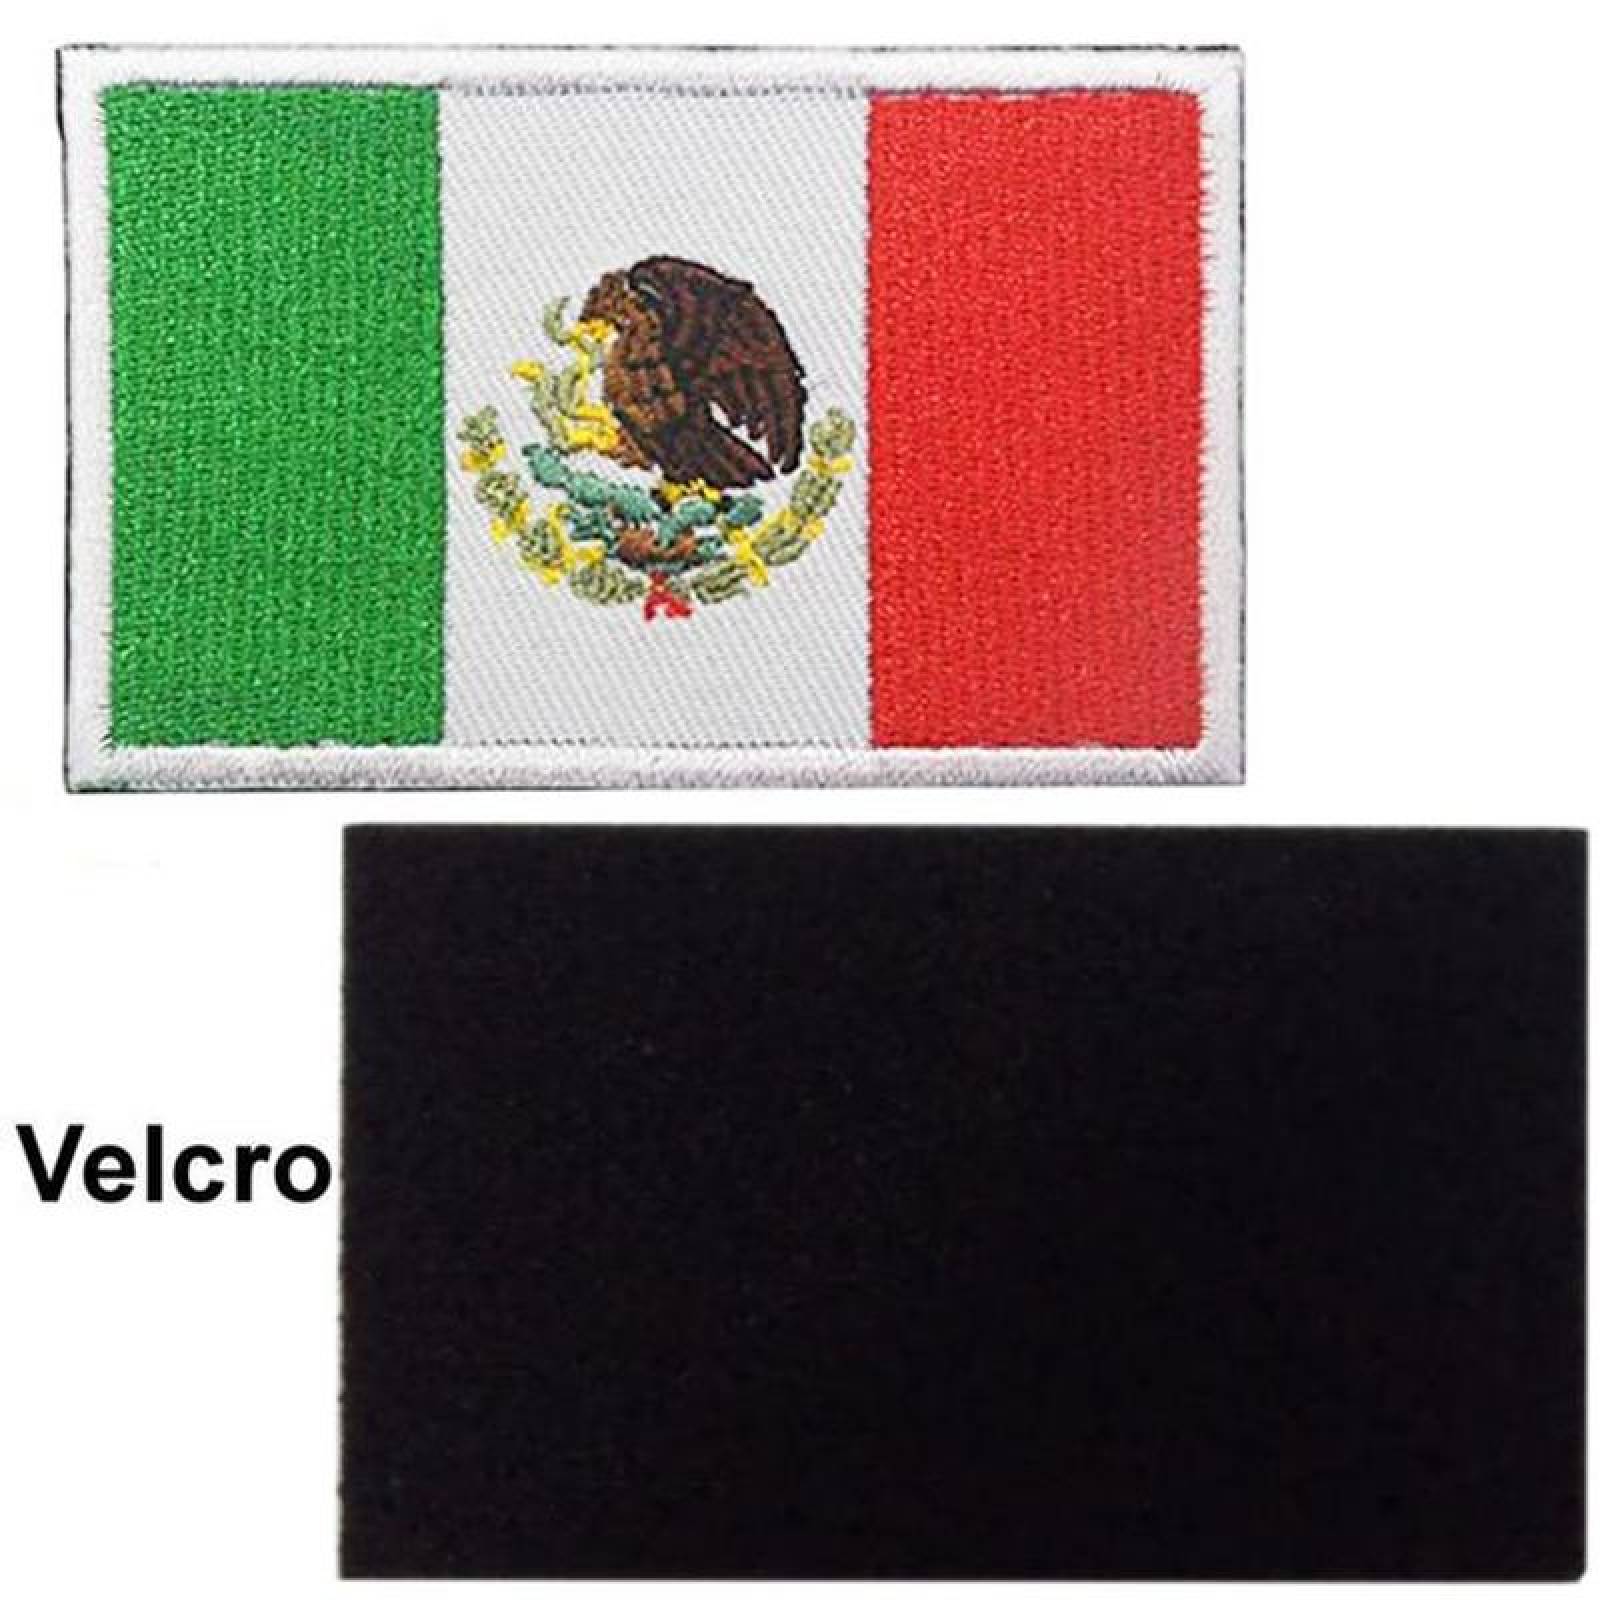 Parche de velcro de goma -  México